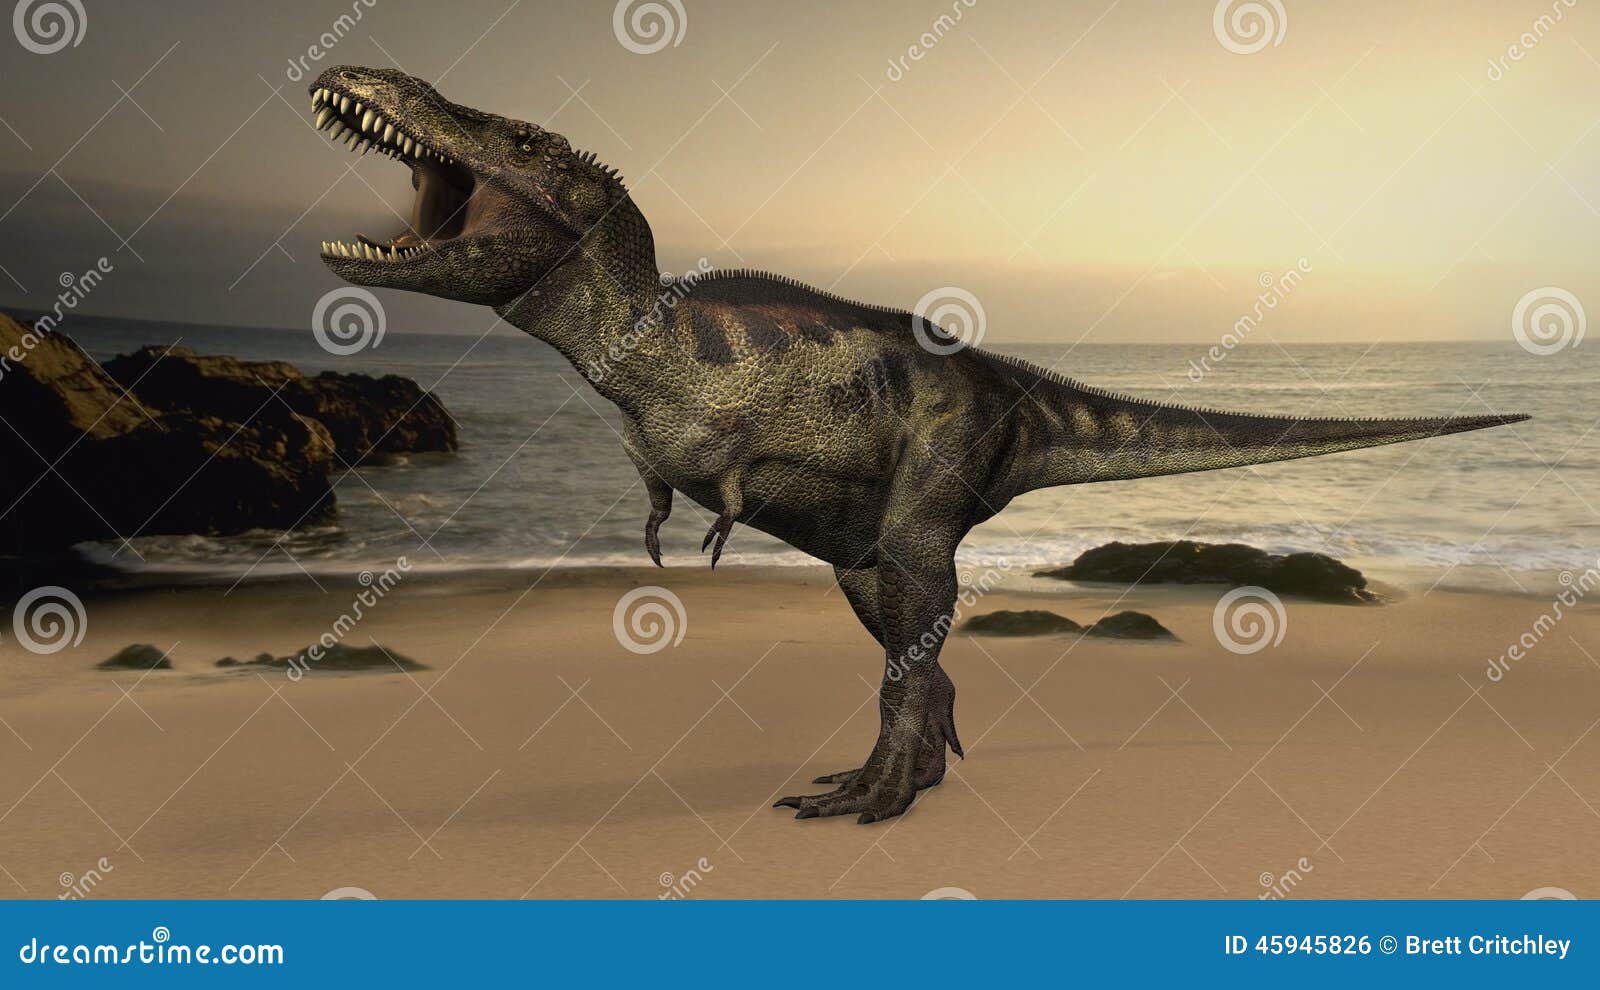 t-rex tyrannosaurus rex dinosaur